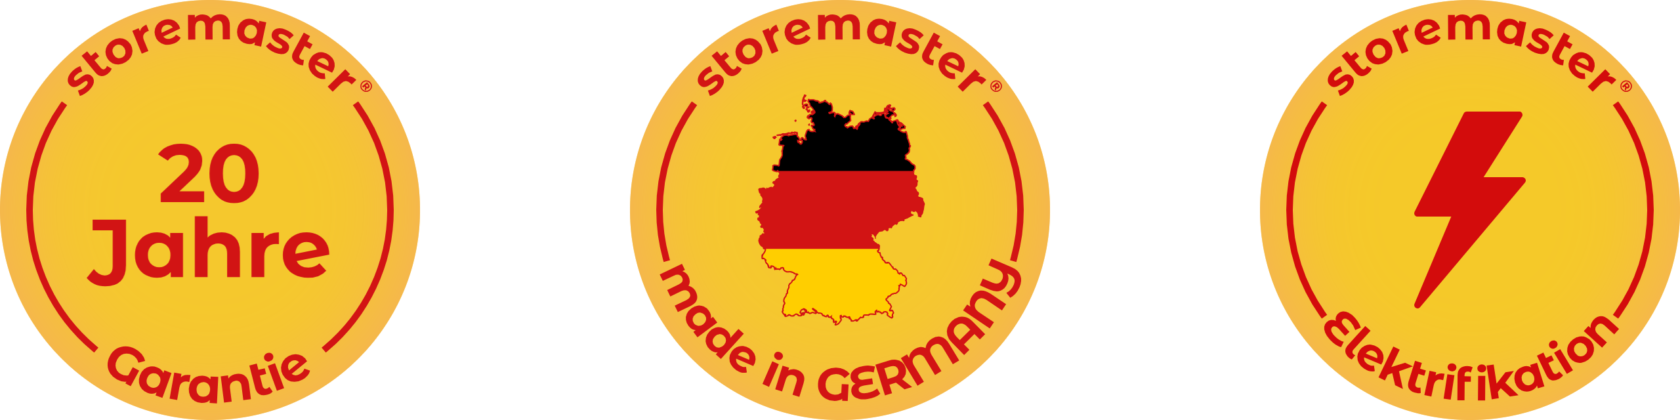 20 años de garantía - Fabricado en Alemania - Posibilidad de electrificación